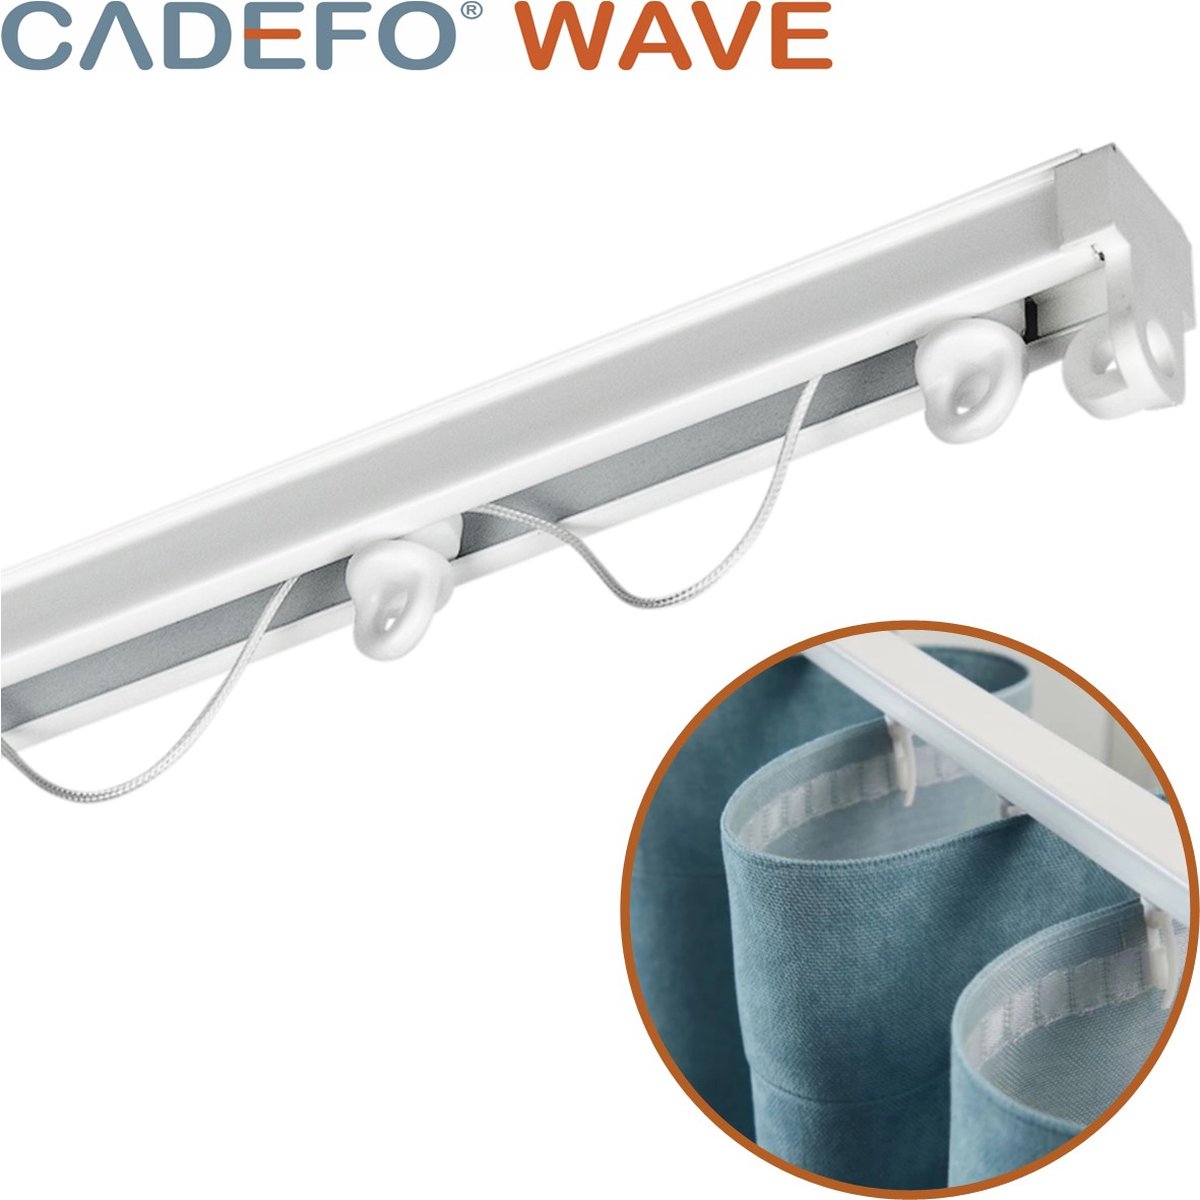 CADEFO WAVE (551 - 600 cm) Gordijnrails - Compleet op maat! - UIT 1 STUK - Leverbaar tot 6 meter - Plafondbevestiging - Lengte 598 cm